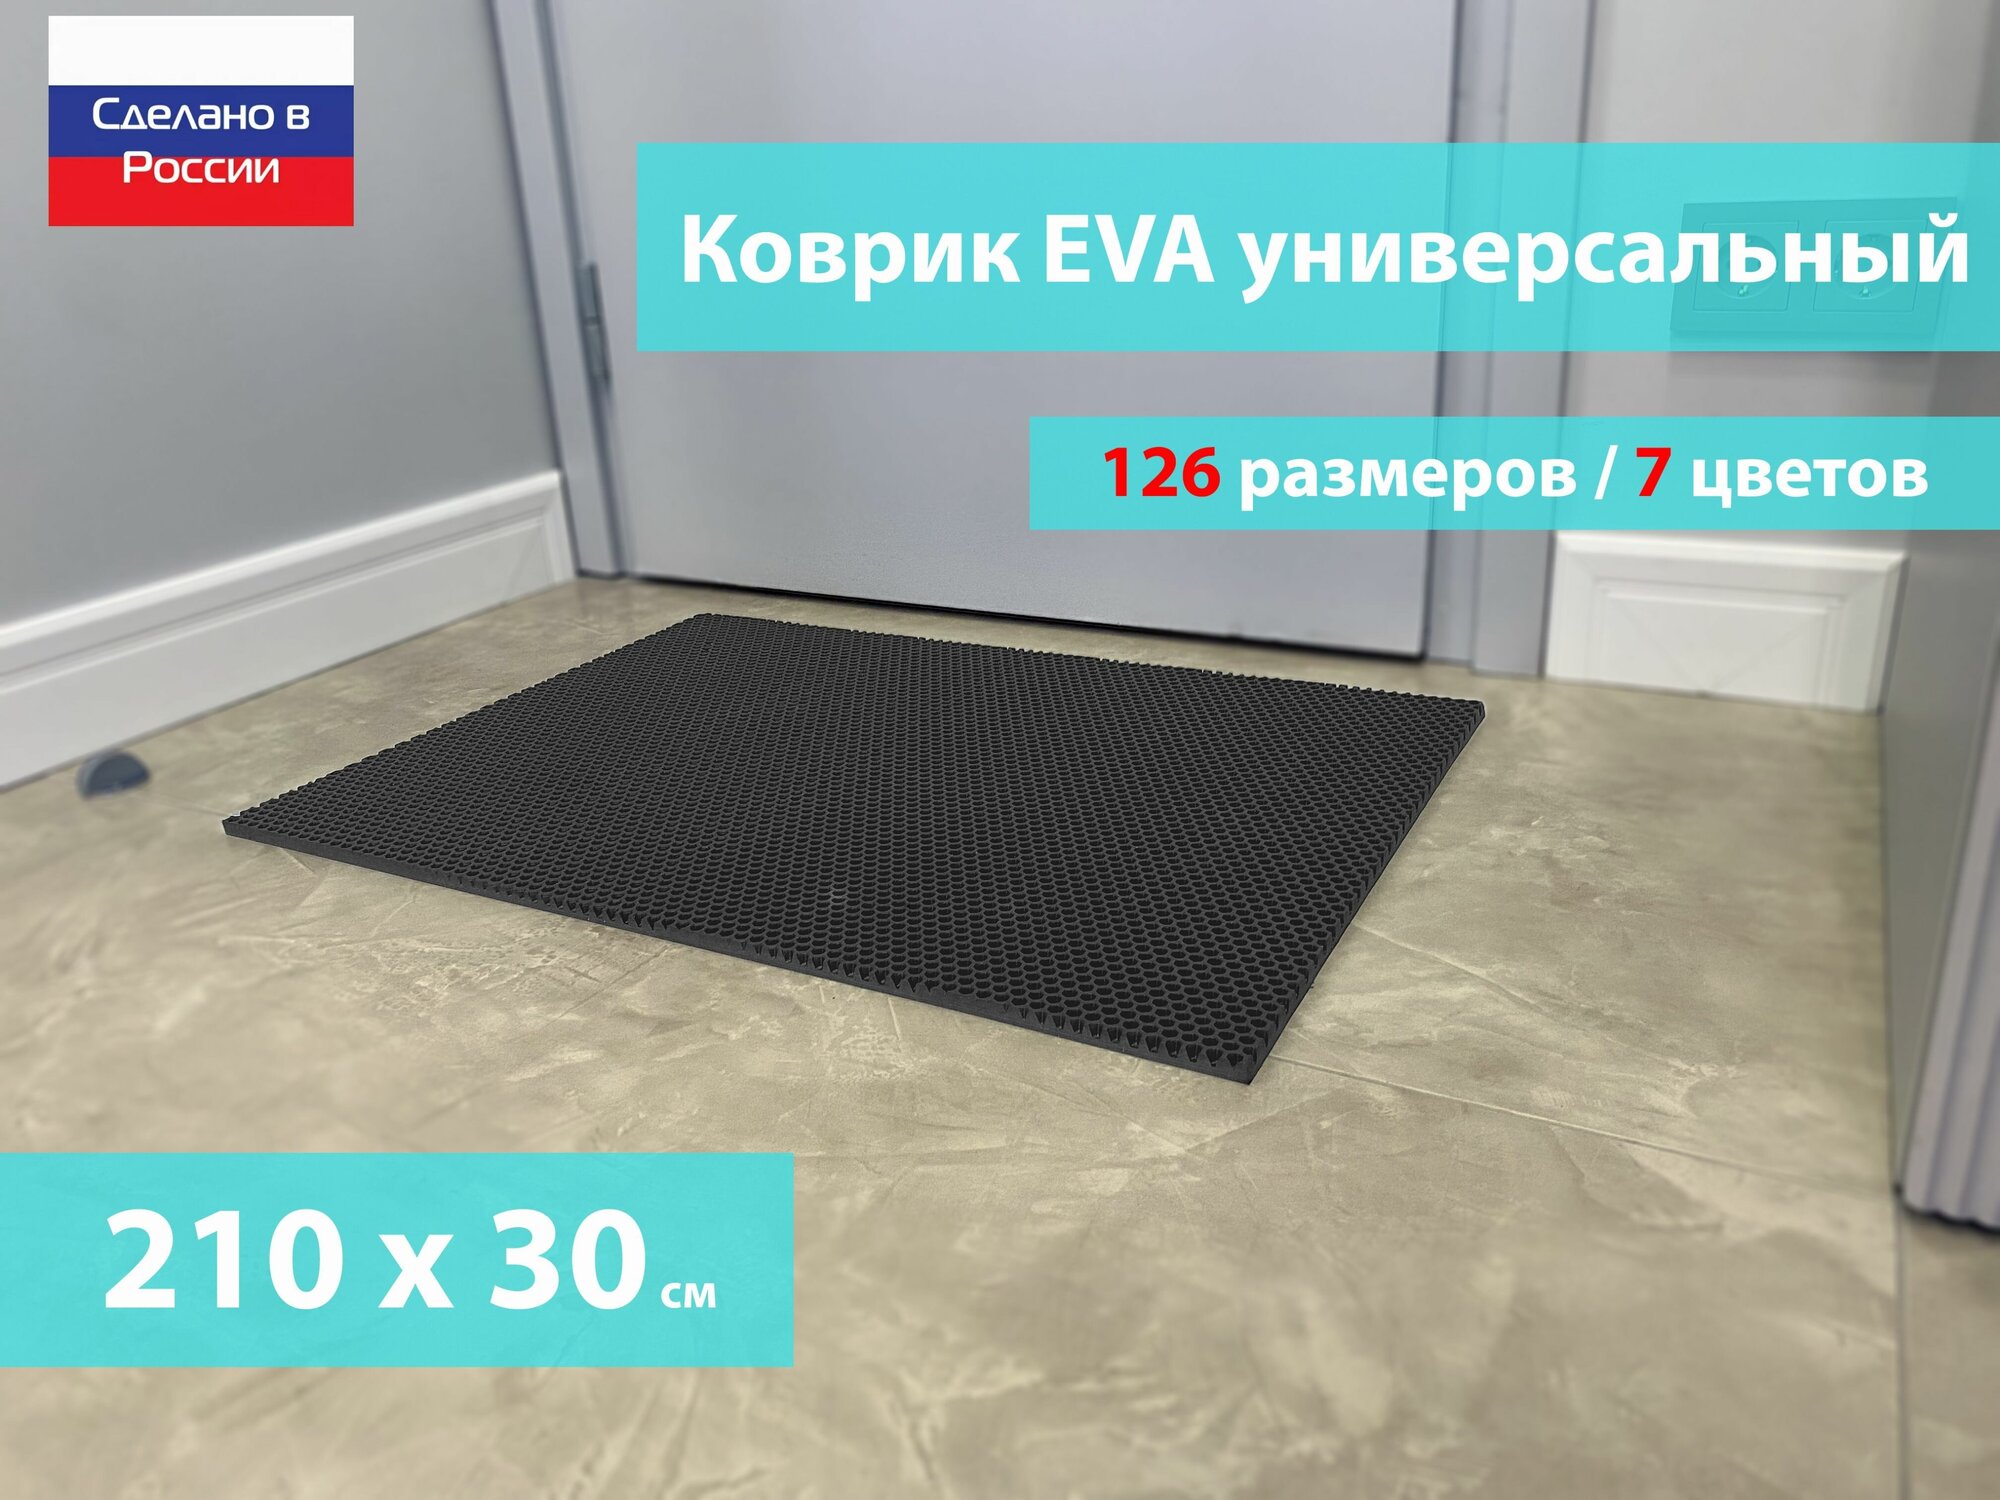 Коврик придверный EVA (ЕВА) в прихожую для обуви / Ковер ЭВА на пол перед дверью/ серый / размер 210 х 30 см - фотография № 1